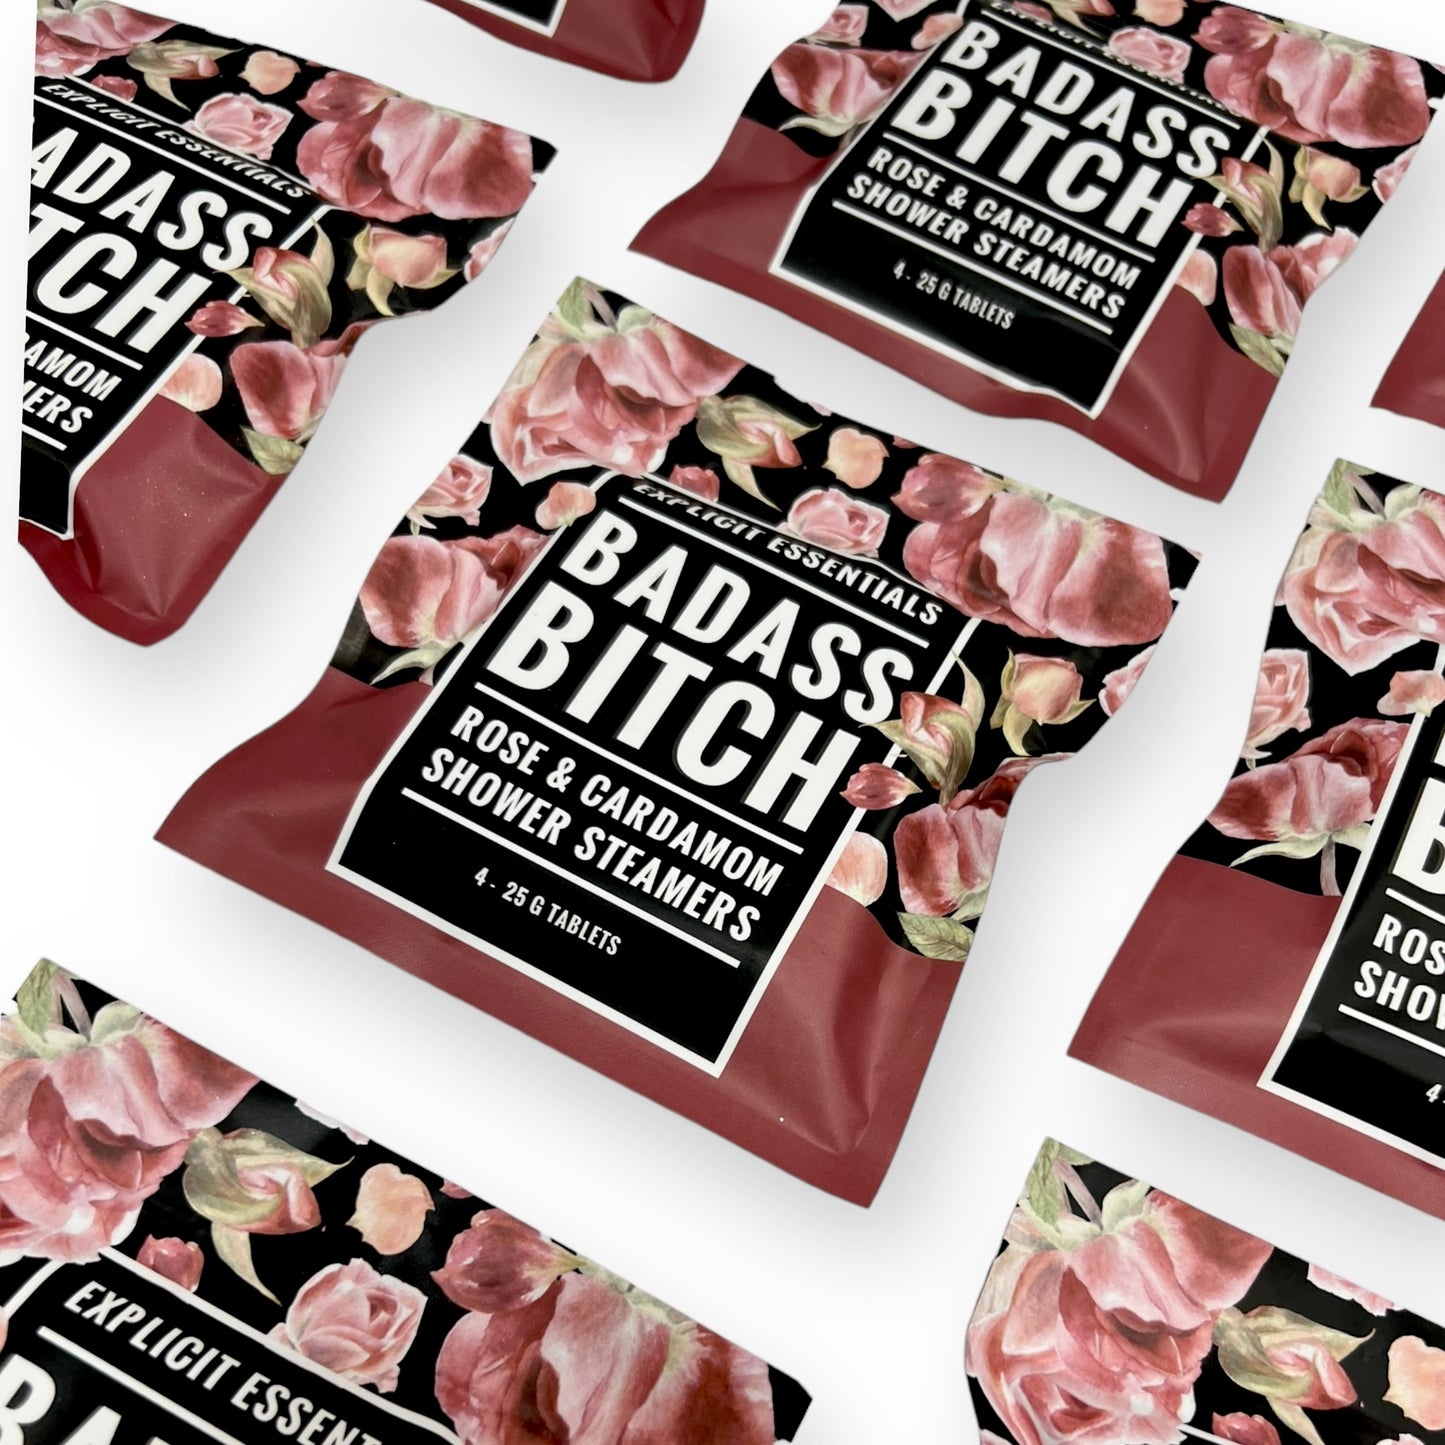 Bad Ass Bitch Rose Shower Steamers